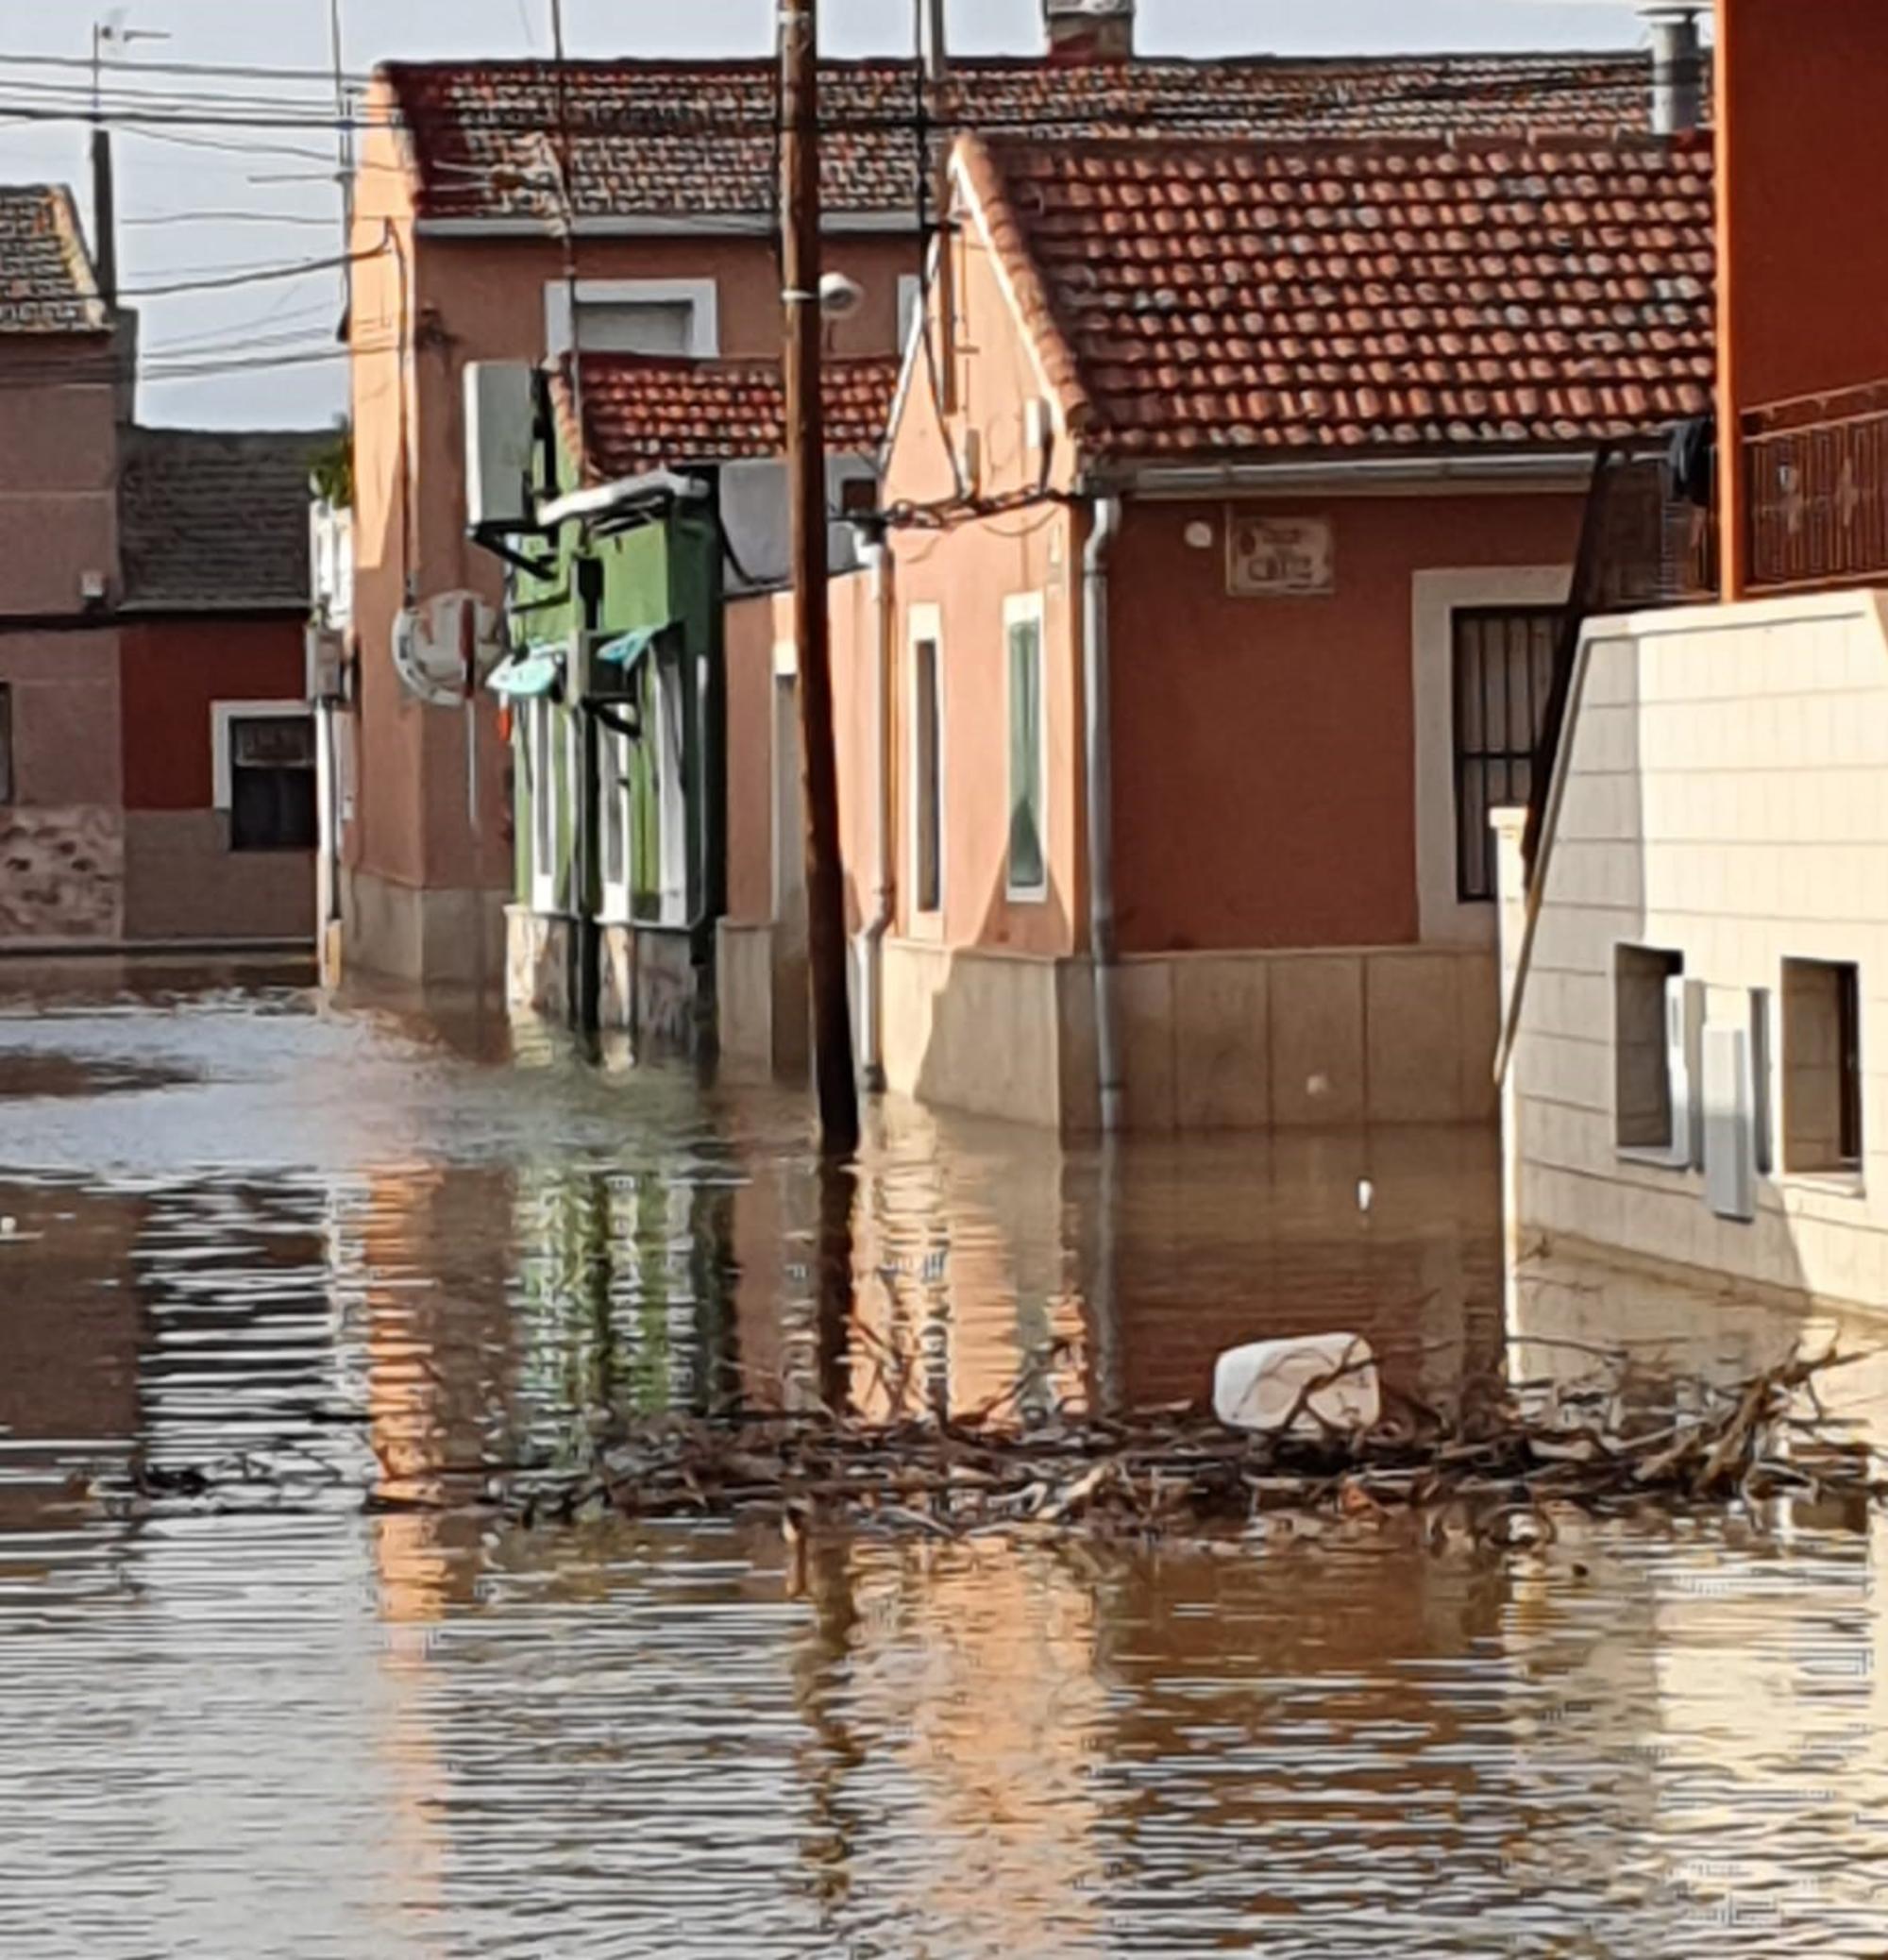 Casas inundadas por las lluvias torrenciales en Alicante